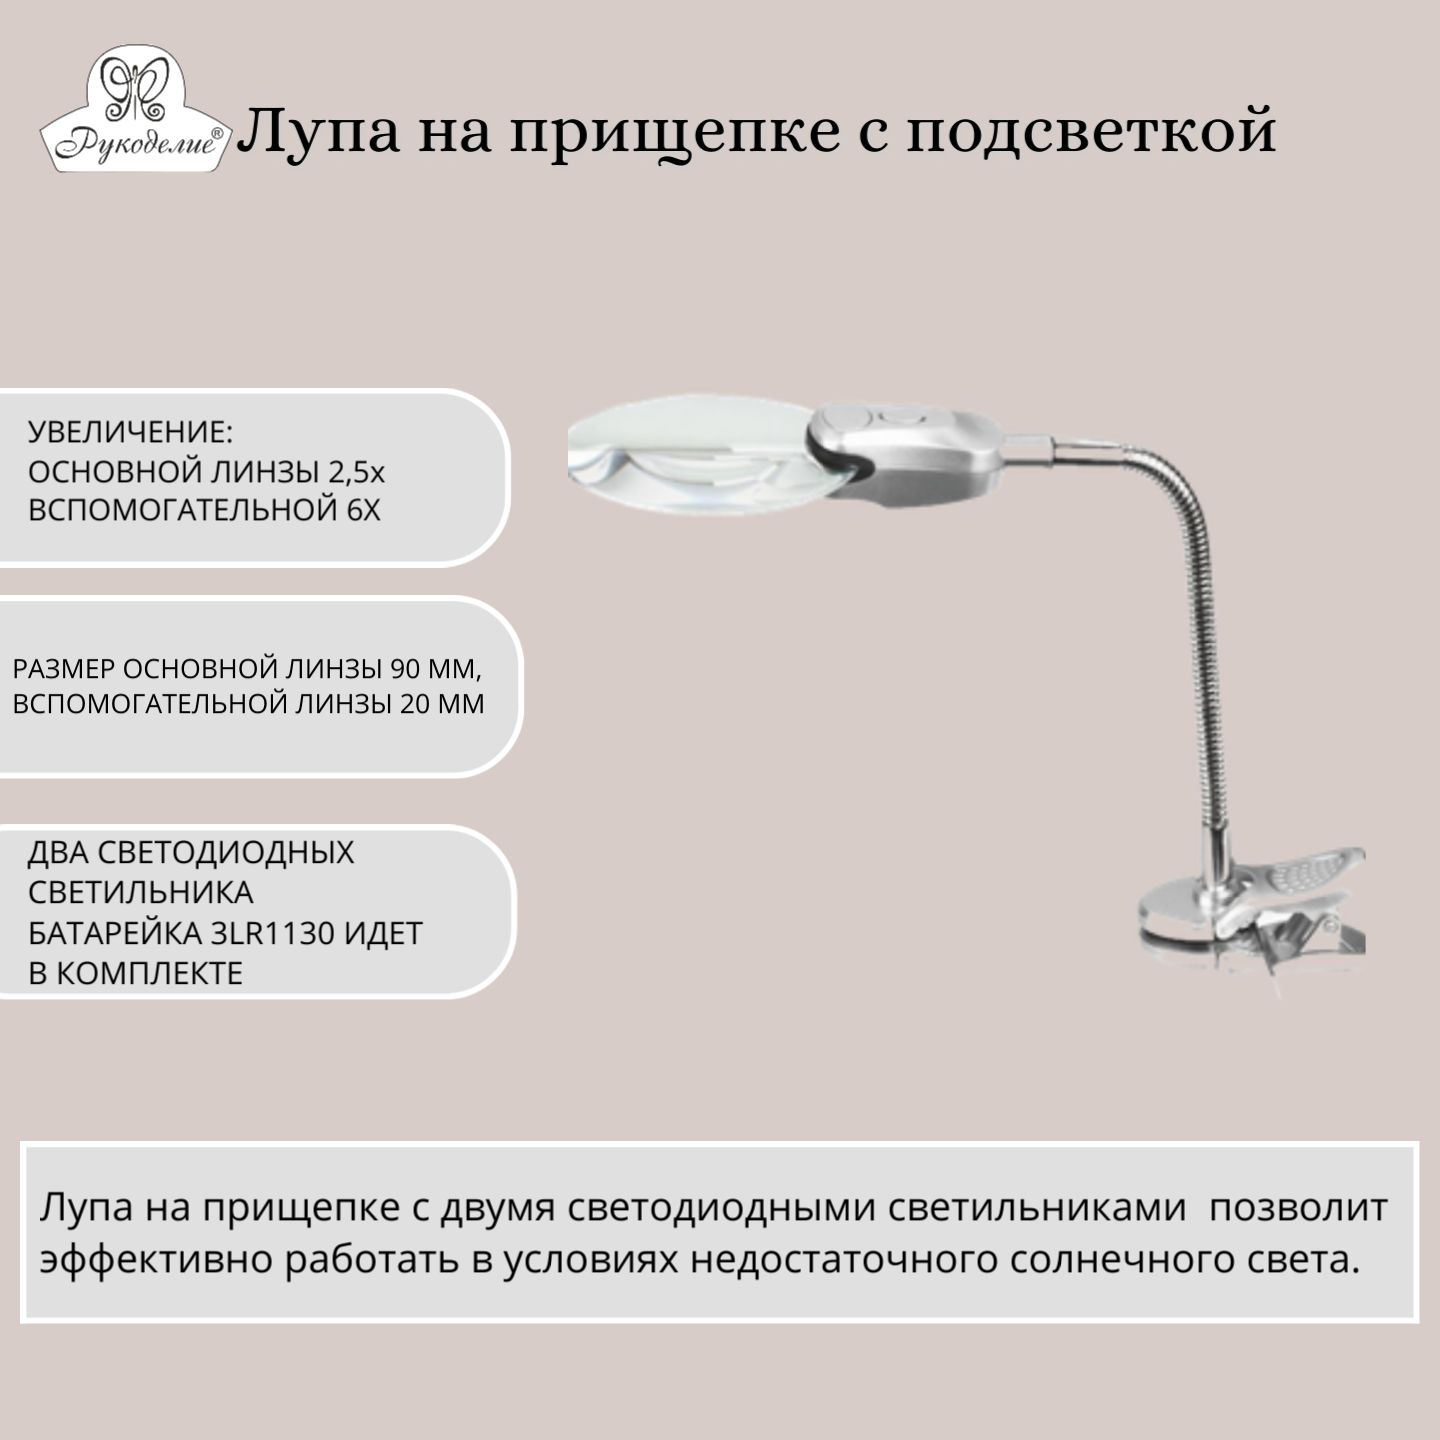 Лампы, лупы для рукоделия - купить оптом со склада в Санкт-Петербурге в компании Айрис